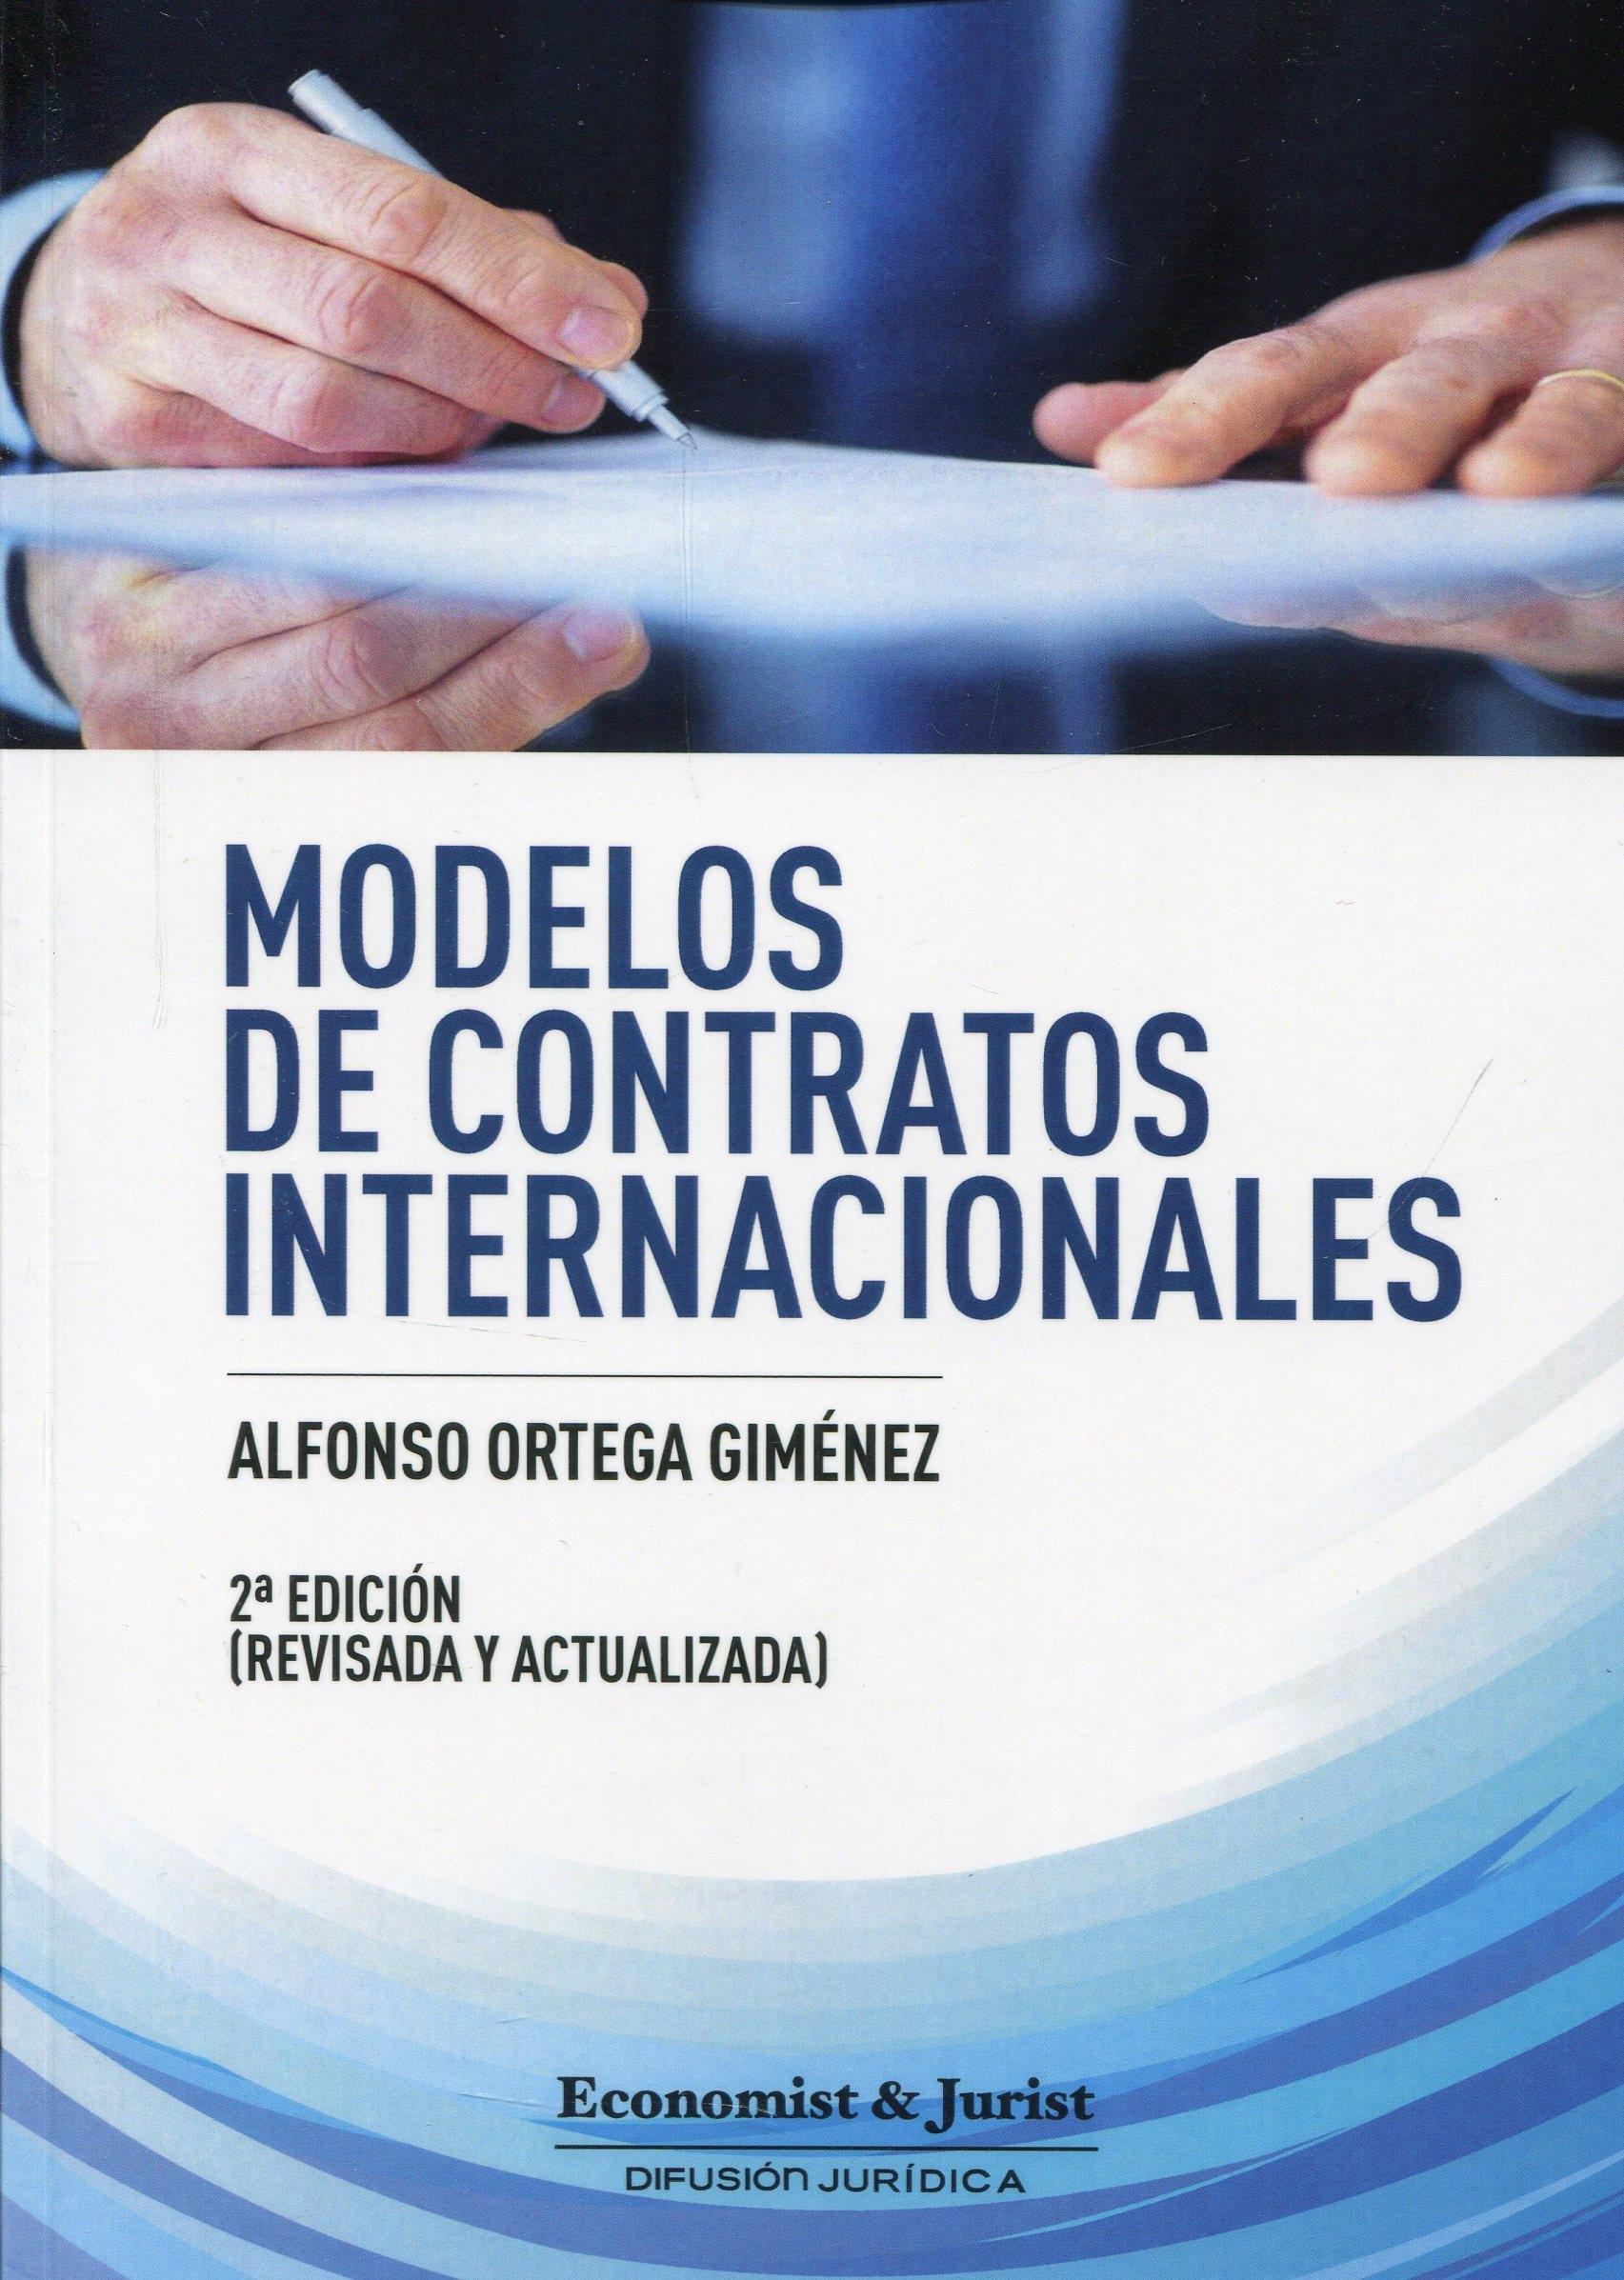 Modelos de Contratos Internacionales 2014